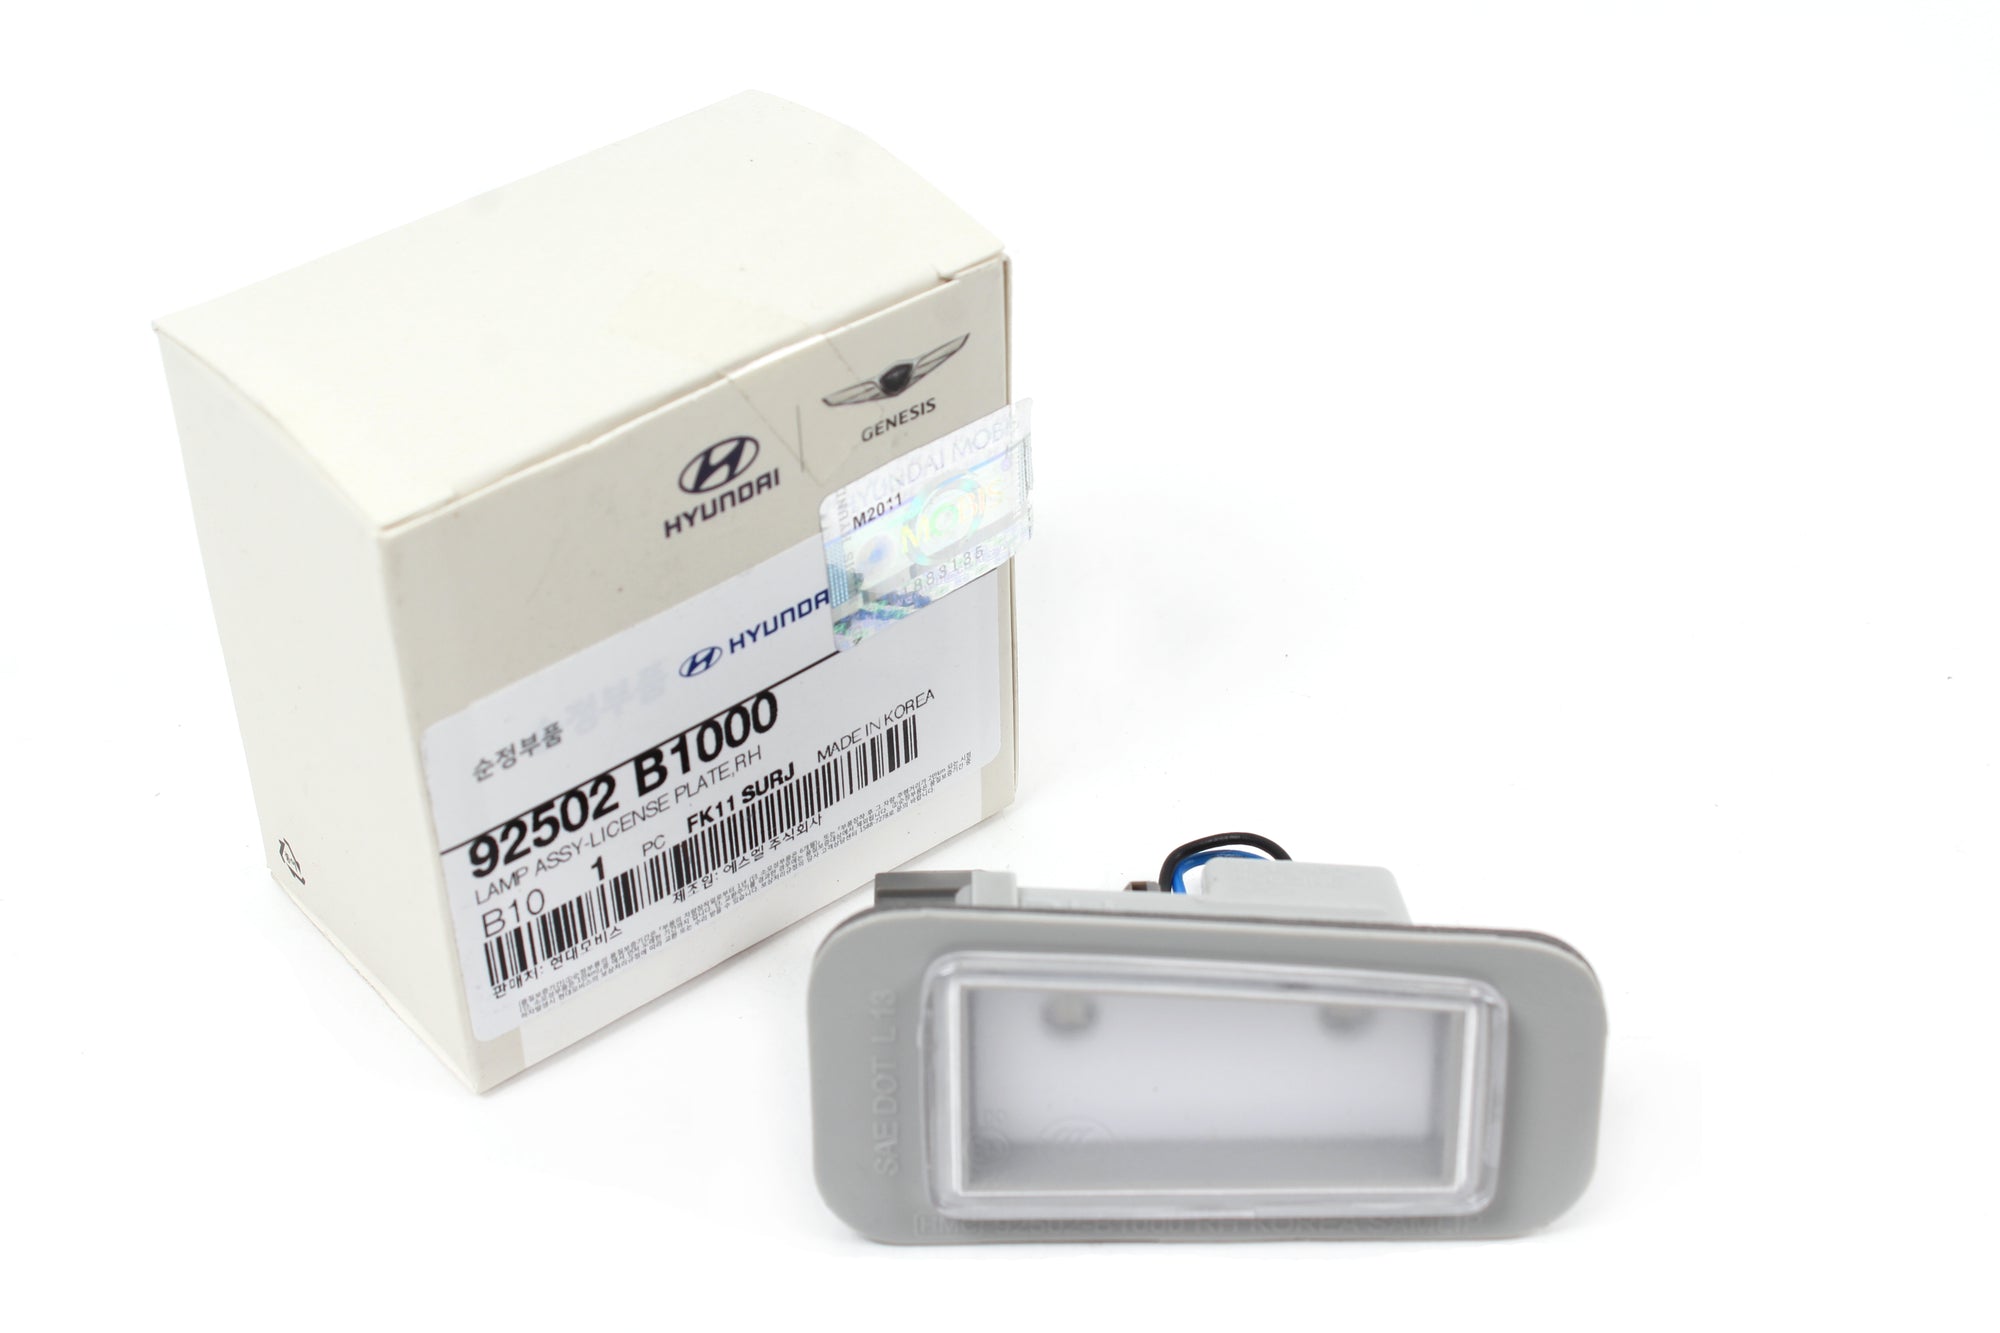 GENUINE License Plate Light lamp RIGHT PASSENGER for 2015-16 Genesis 92502B1000